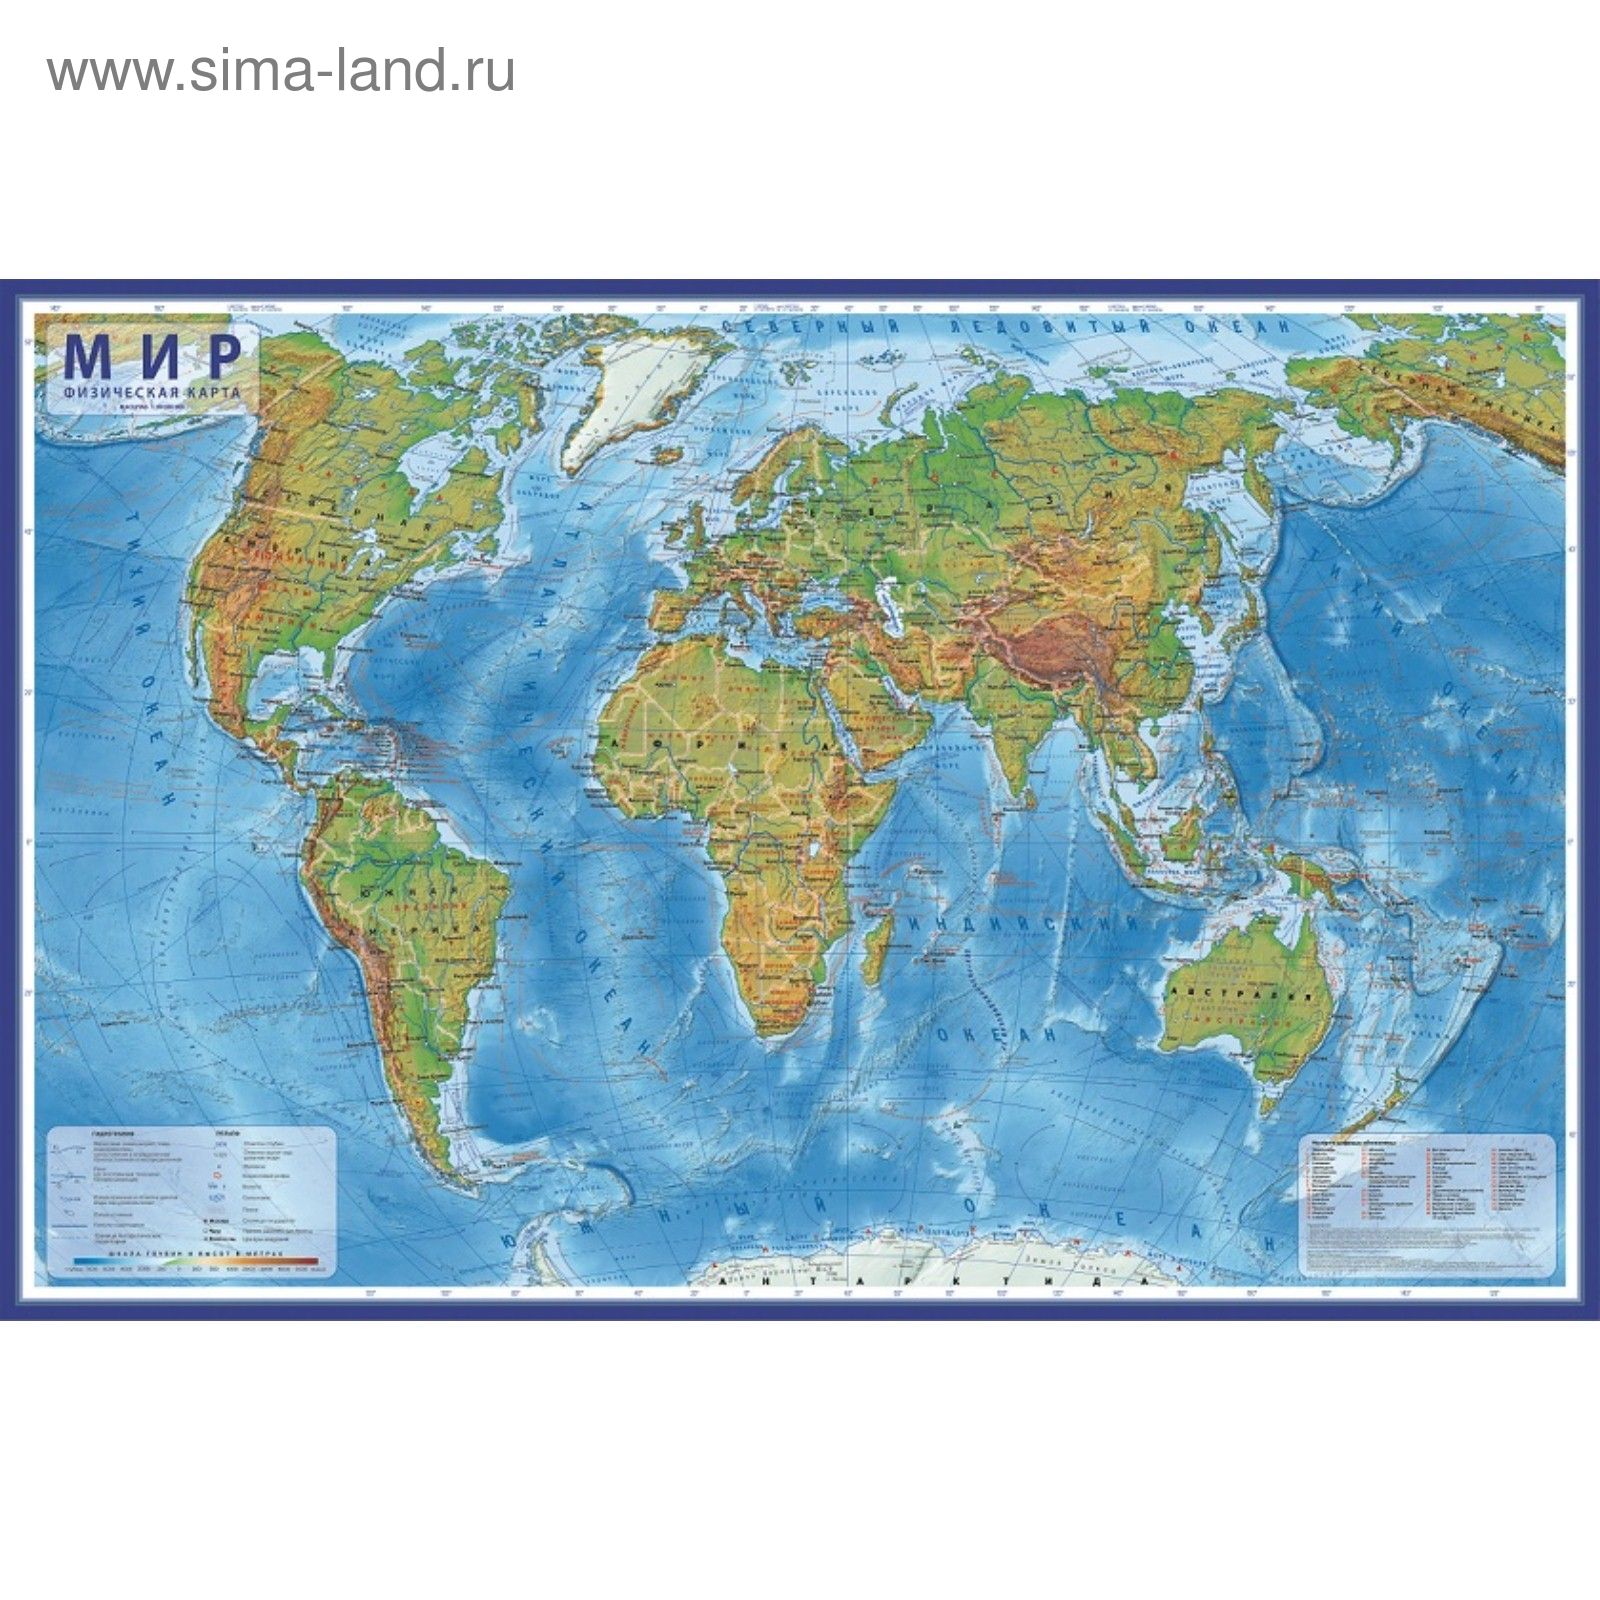 Географическая карта мира на русском языке большого формата: